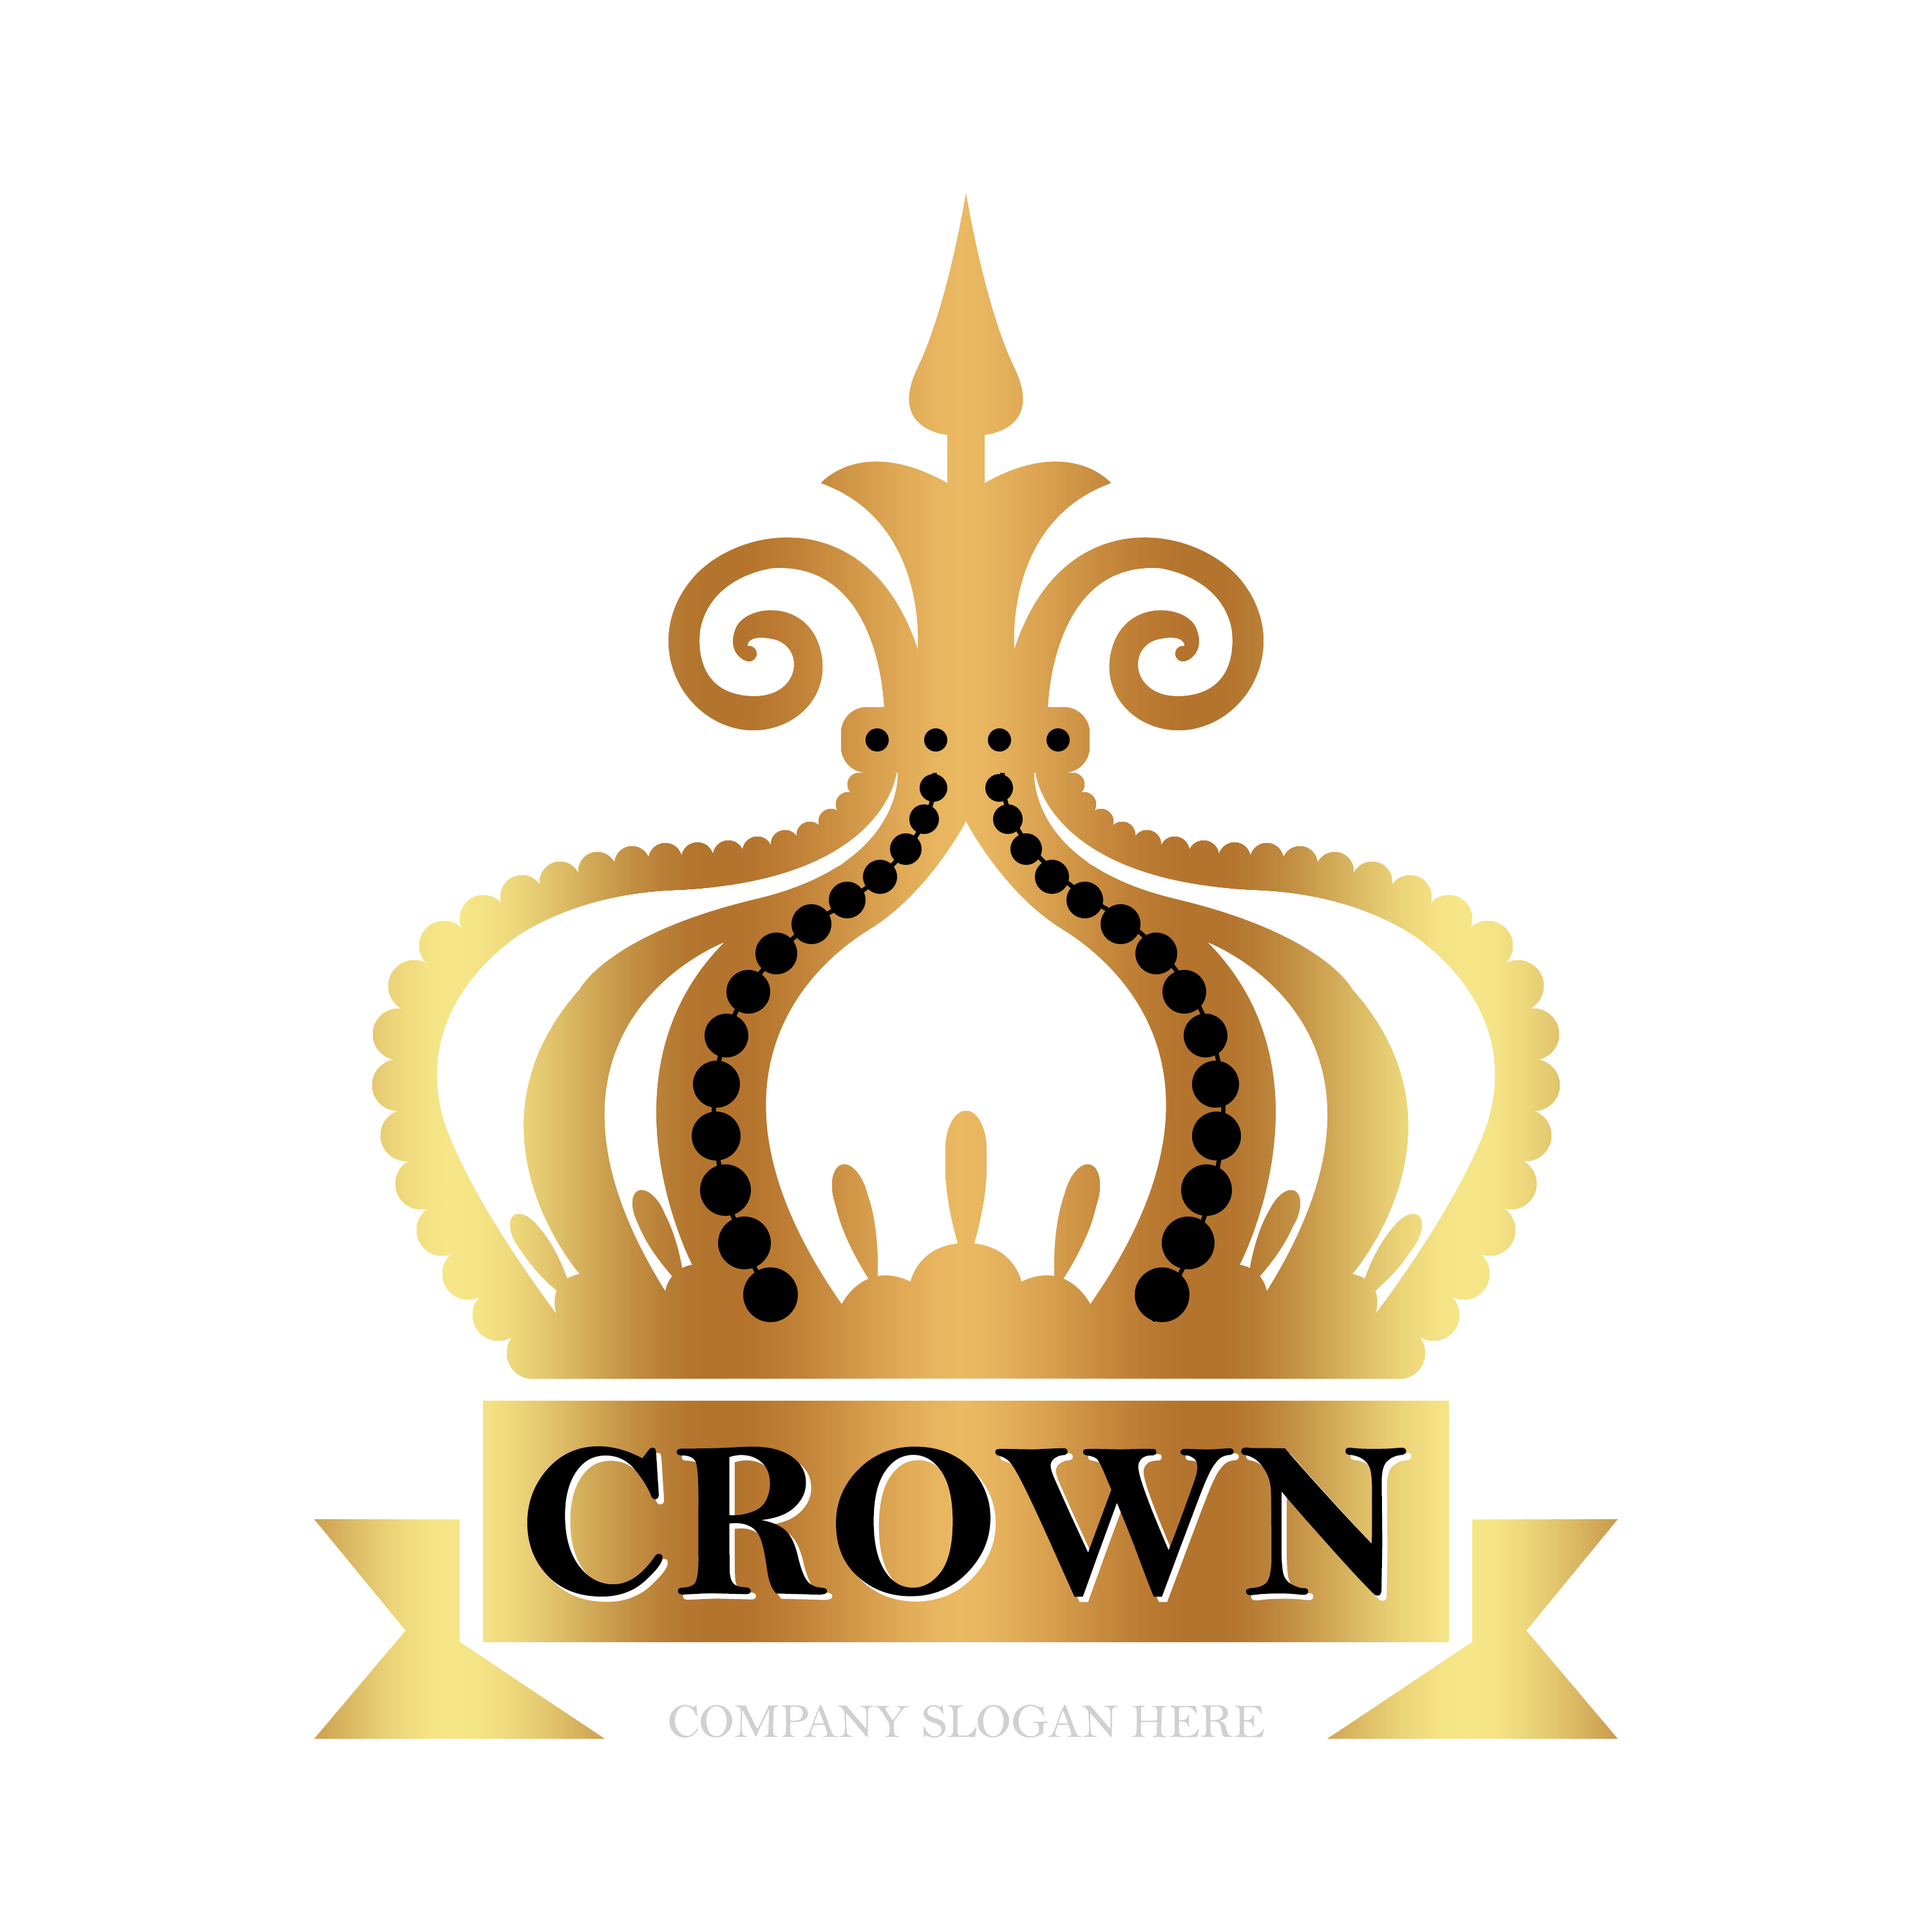 crown logos